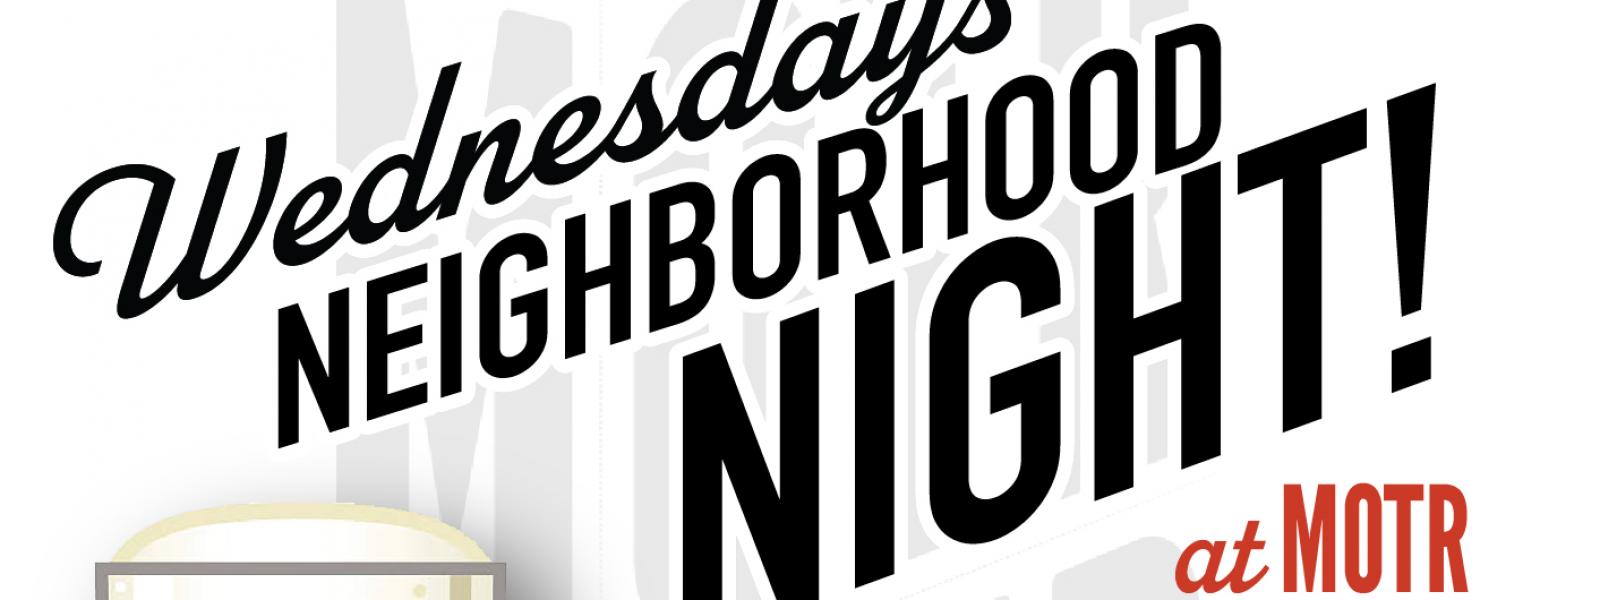 neighborhood night motr wednesdays